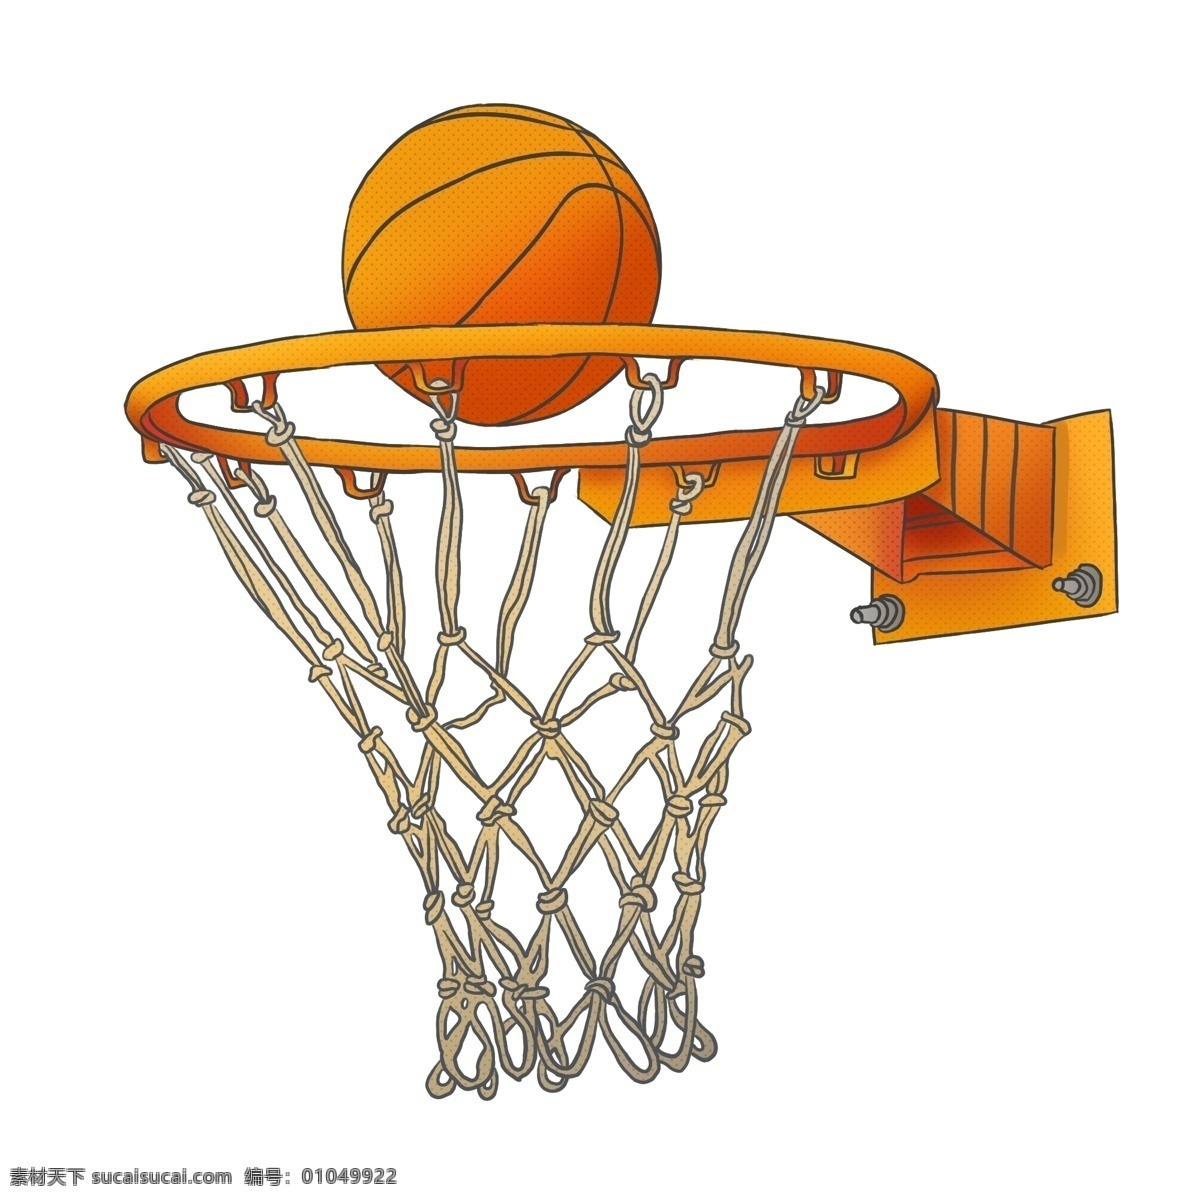 原创 手绘 国际 篮球 日球 赛 投篮 球 框 运动器材 运动元素 手绘元素 国际篮球日 球赛 球框 篮球框 球架 灌篮